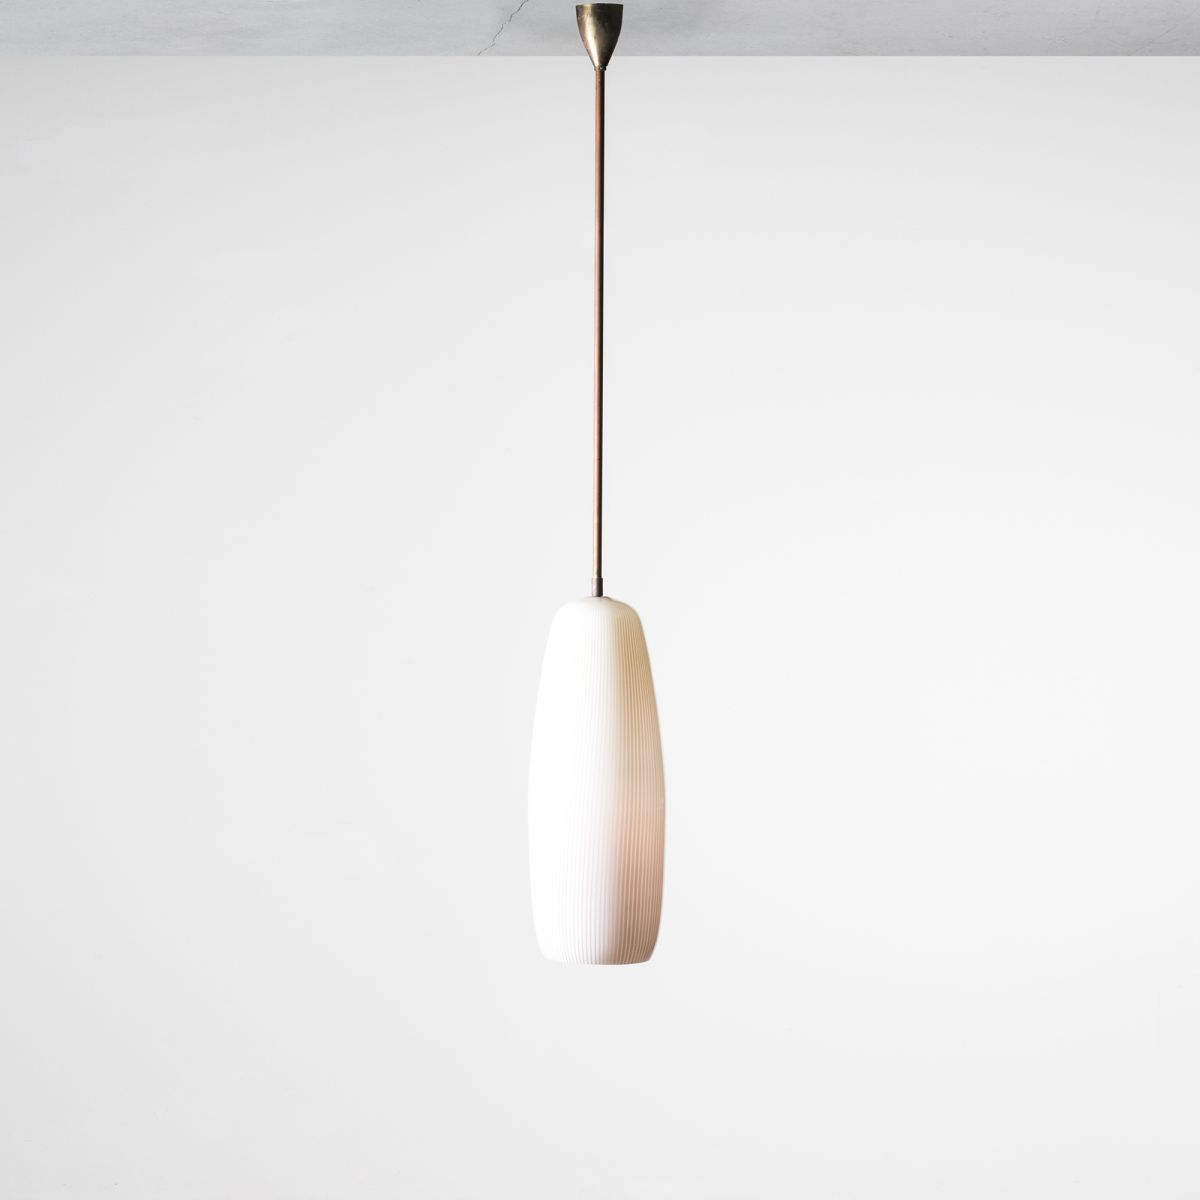 Ceiling lamp Massimo Vignelli pic-1